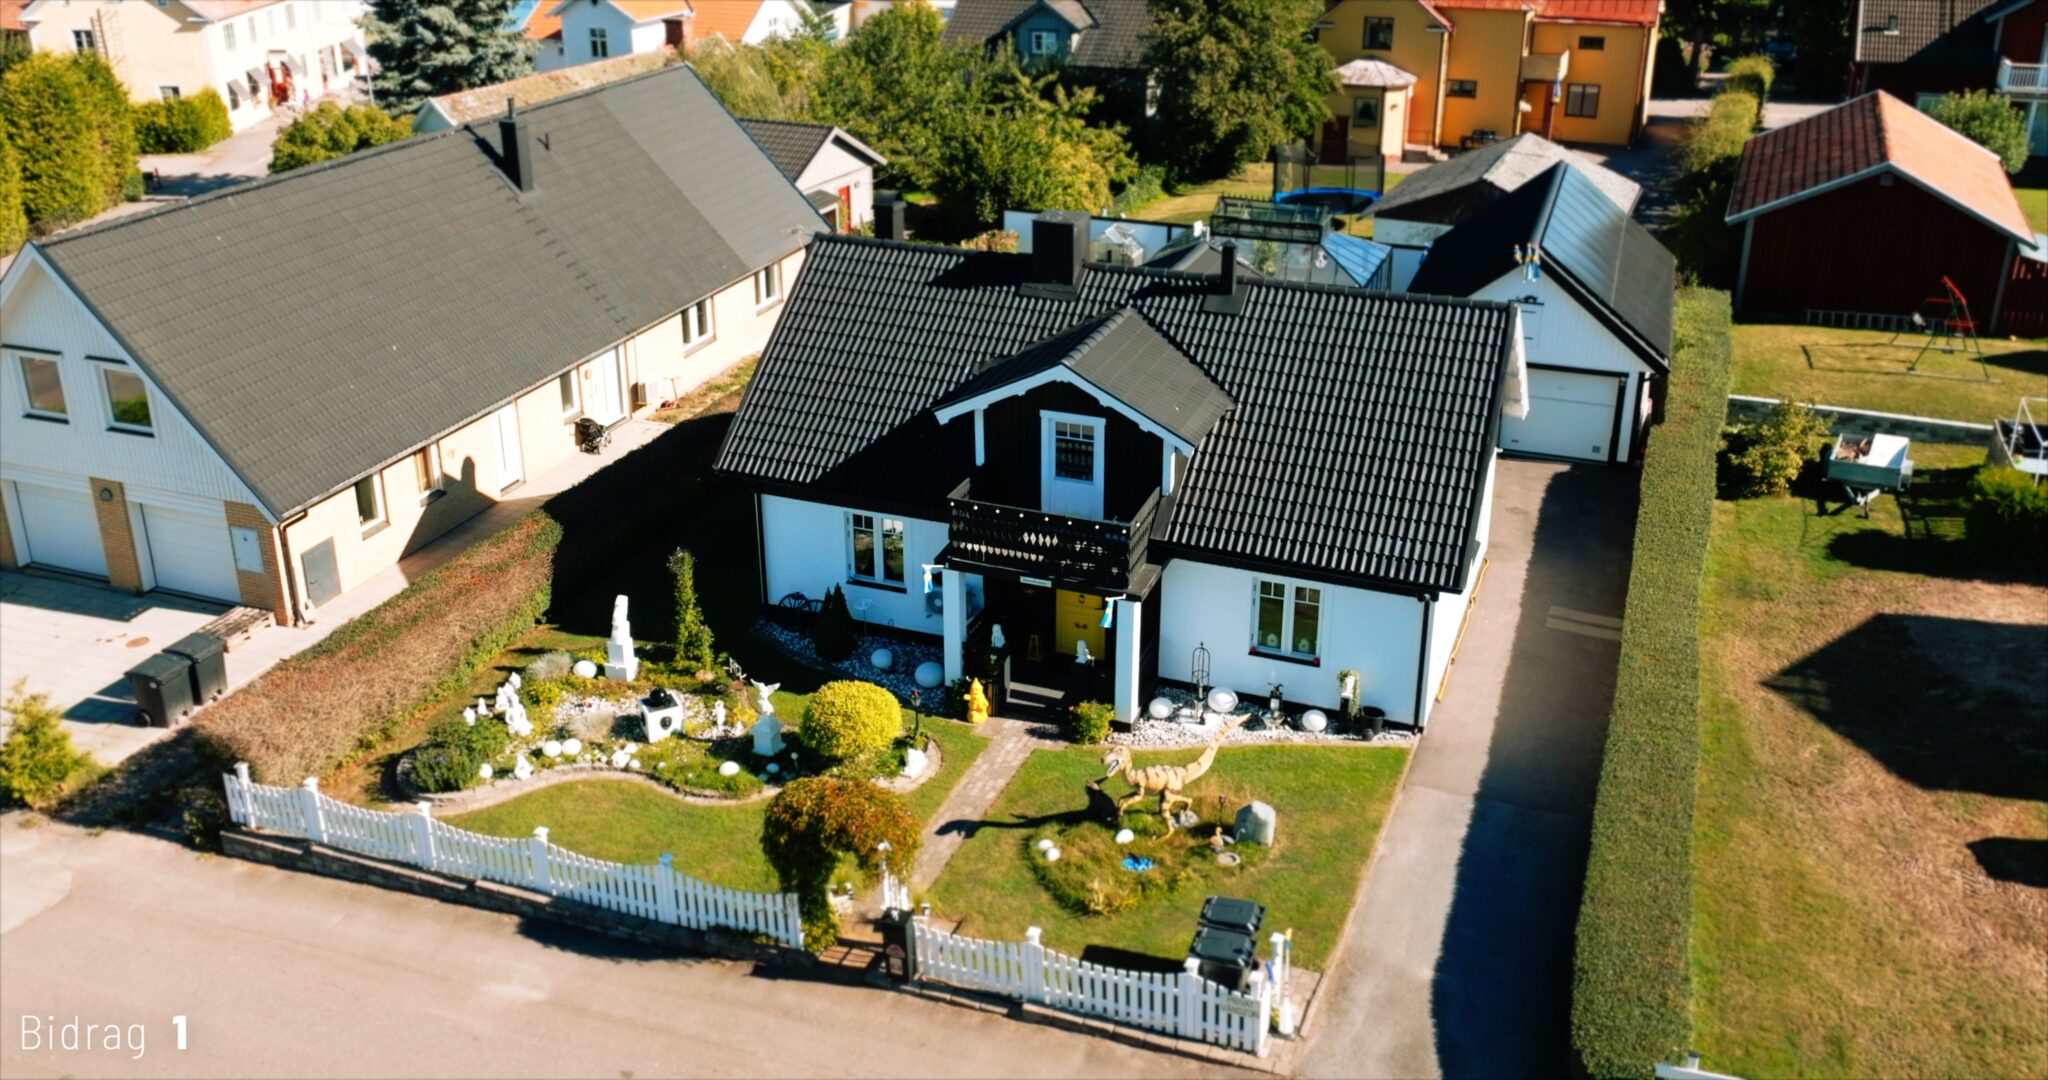 Vinnarhuset i tävlingen "Motalas häftigaste hem" fotograferat med drönare i dagsljus